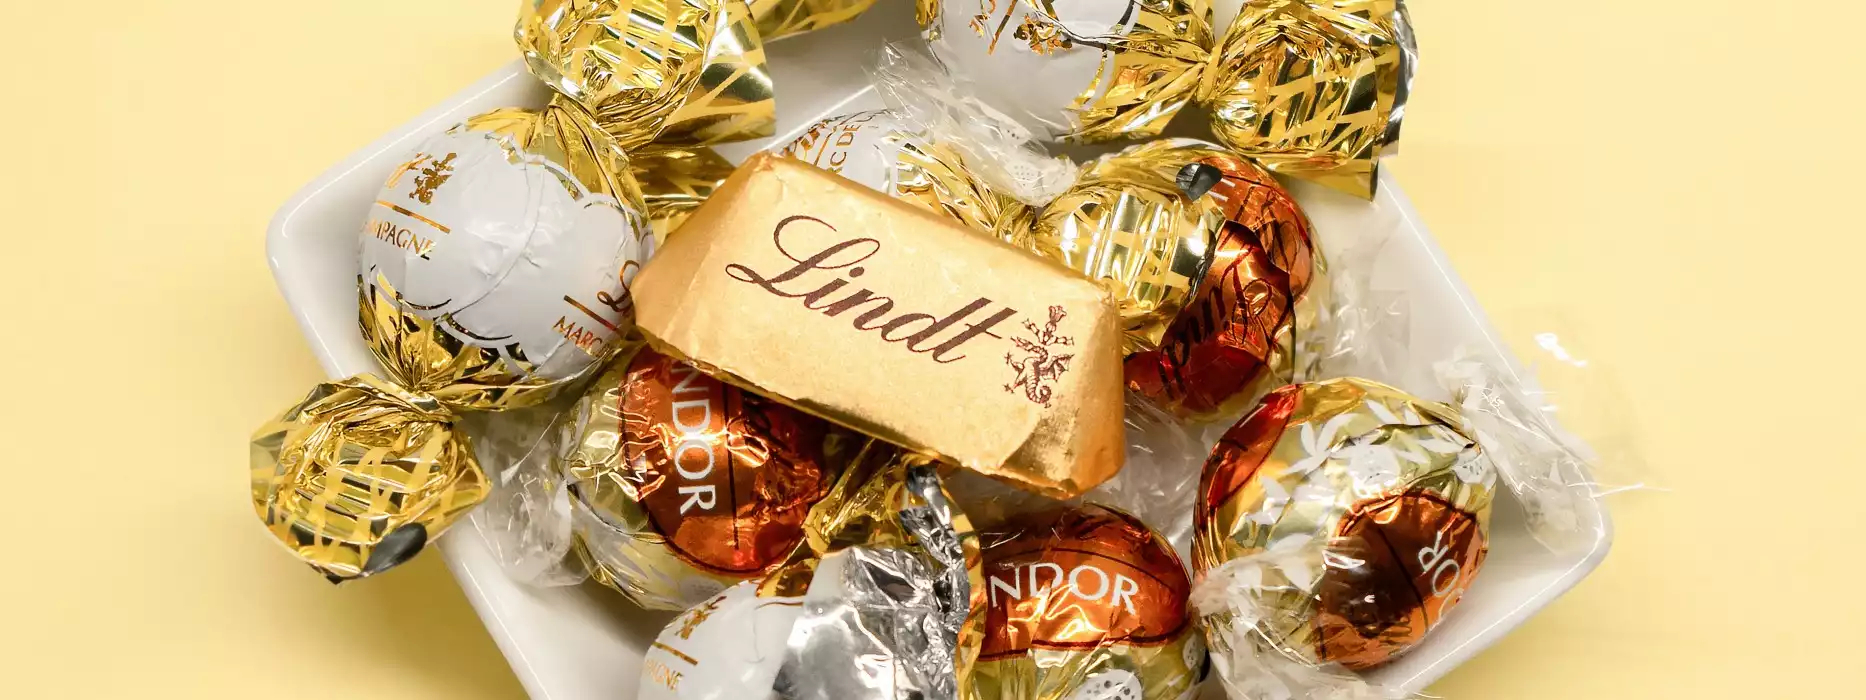 Die berühmte Lindt Schokolade aus der Schweiz ist ein beliebtes Geschenk zu Weihnachten oder Ostern. In einer Umfrage im Juli-August 2023, wer eine Marke innerhalb des letzten Jahres gegessen hat, liegt die Lindt Schokolade auf Platz 5. Beliebter waren Knoppers, Duplo, Milka und auf Platz 1 Kinder.